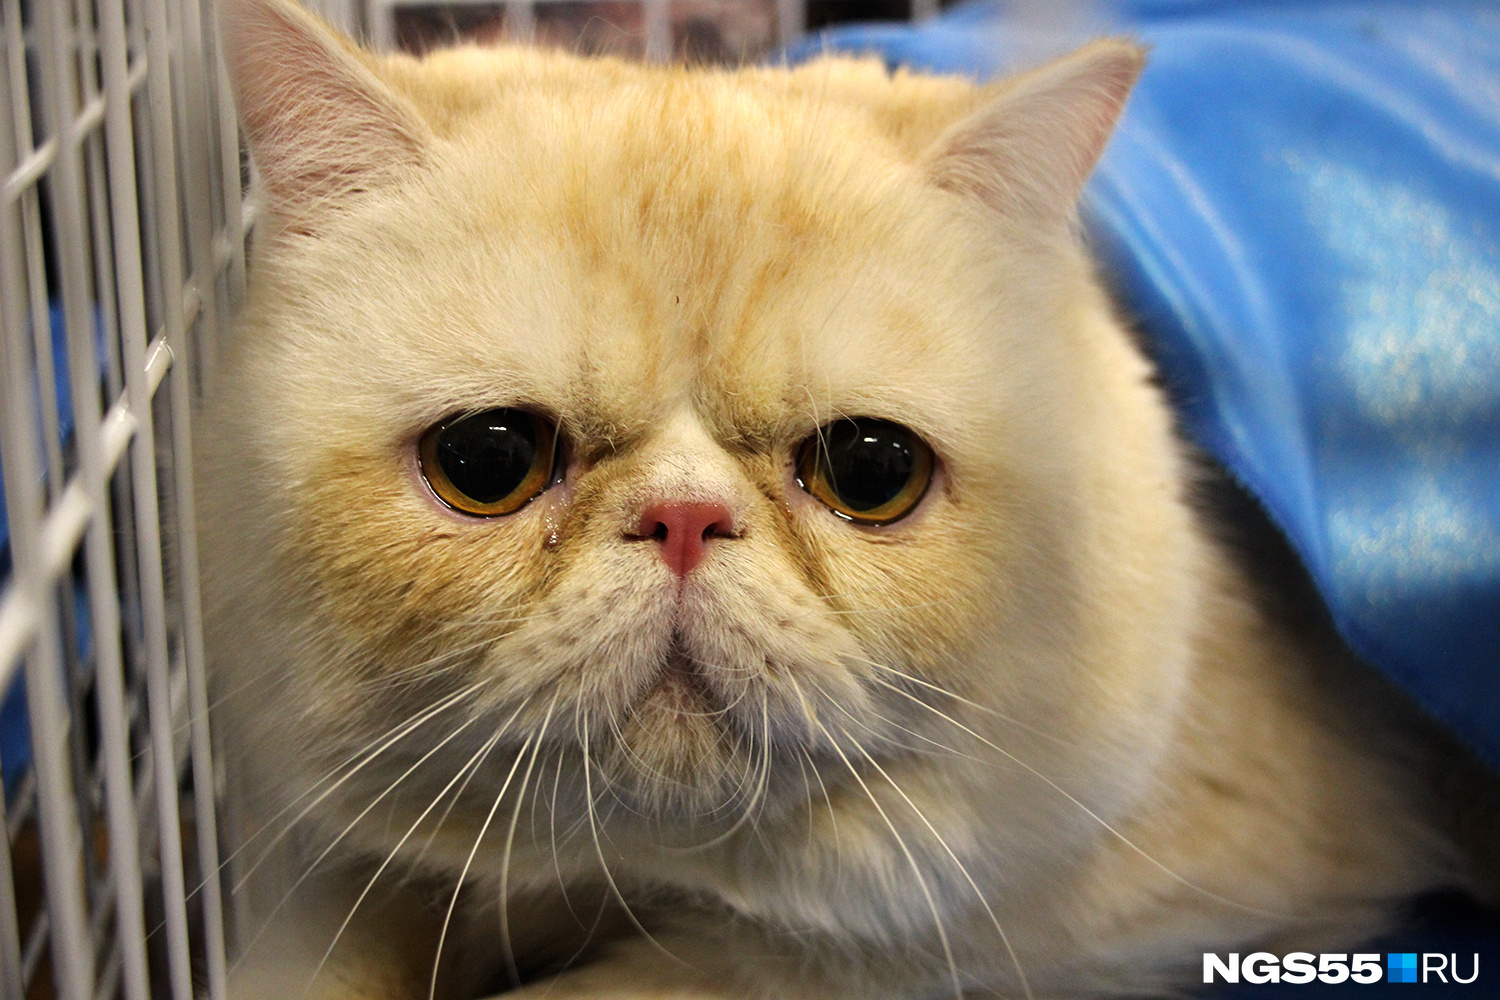 Короткошёрстный персидский кот-экзот грустно смотрел на посетителей из-под праздничной голубой накидки 